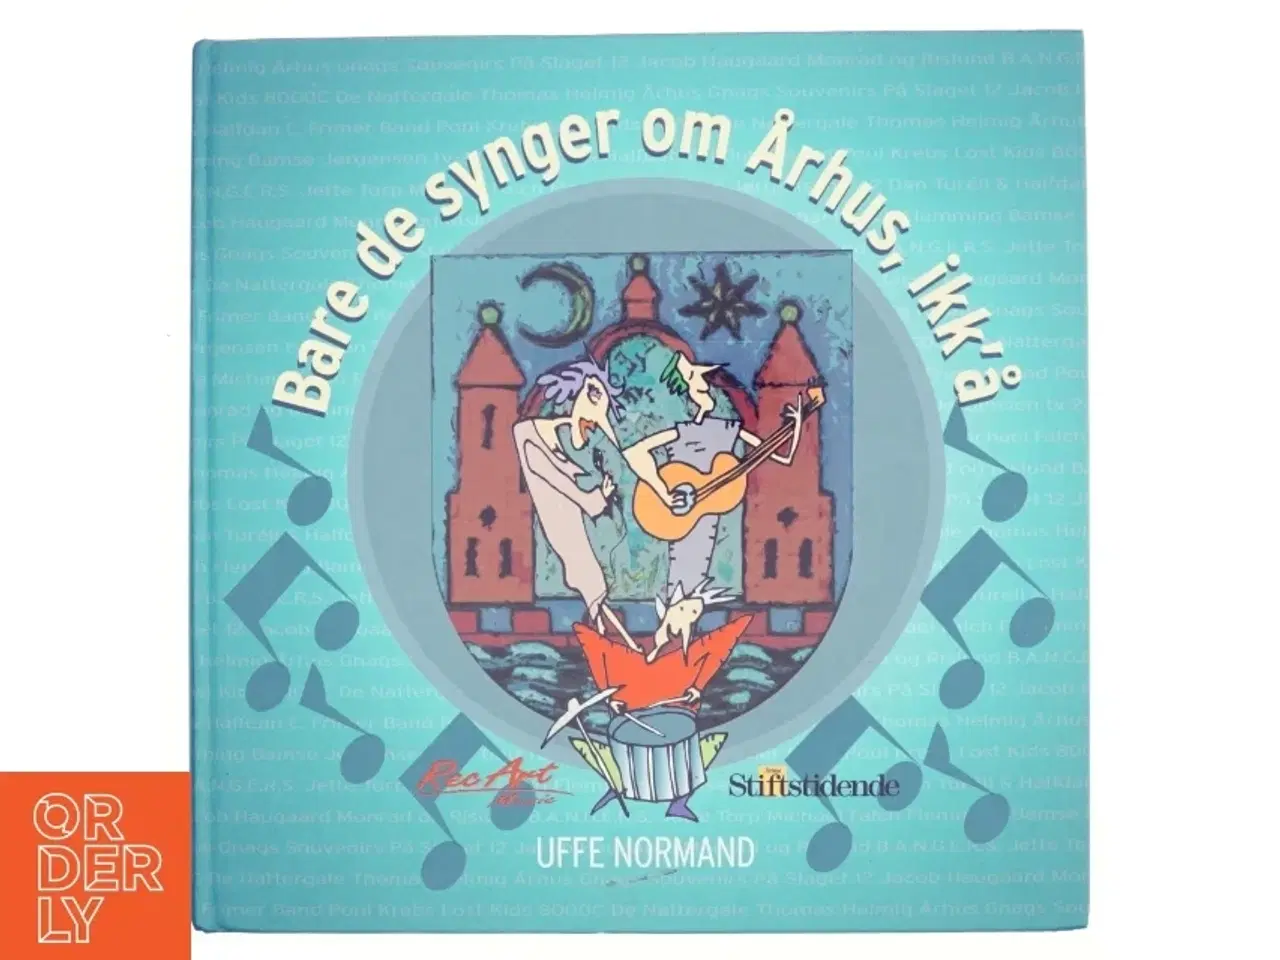 Billede 1 - Bare de synger om Århus, ikk'å : en rytmisk registrant : Uffe Normand og Århus Stiftstidende præsenterer sange fra den rytmiske musik, der handler om